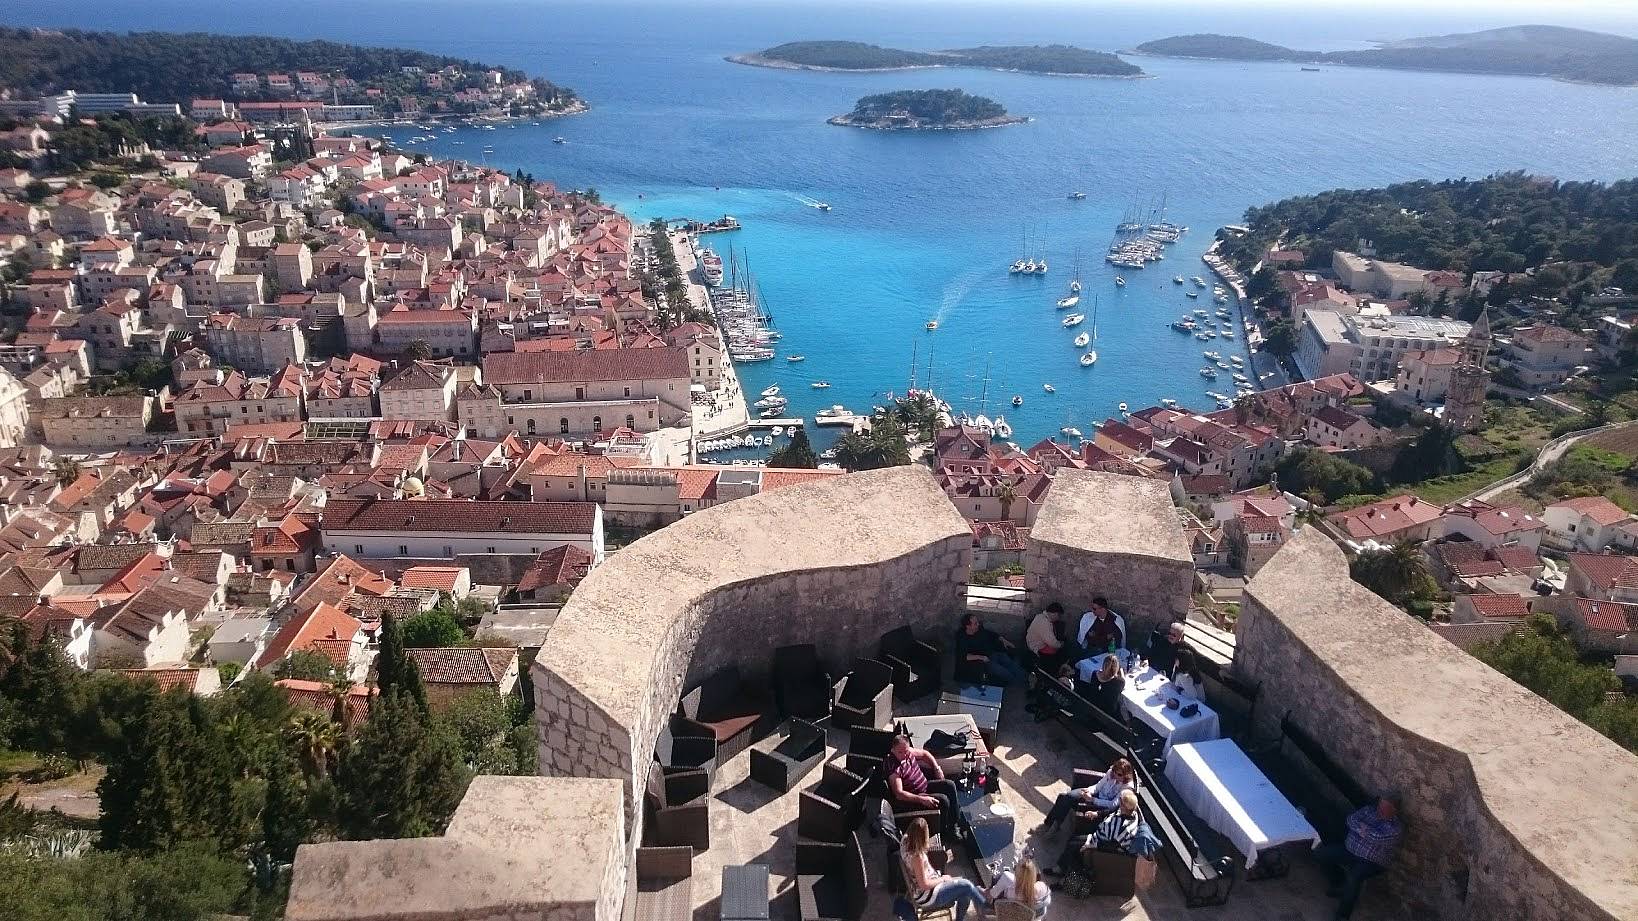 Vacaciones en Adriático desde Split, Dubrovnik hasta Isla Hvar